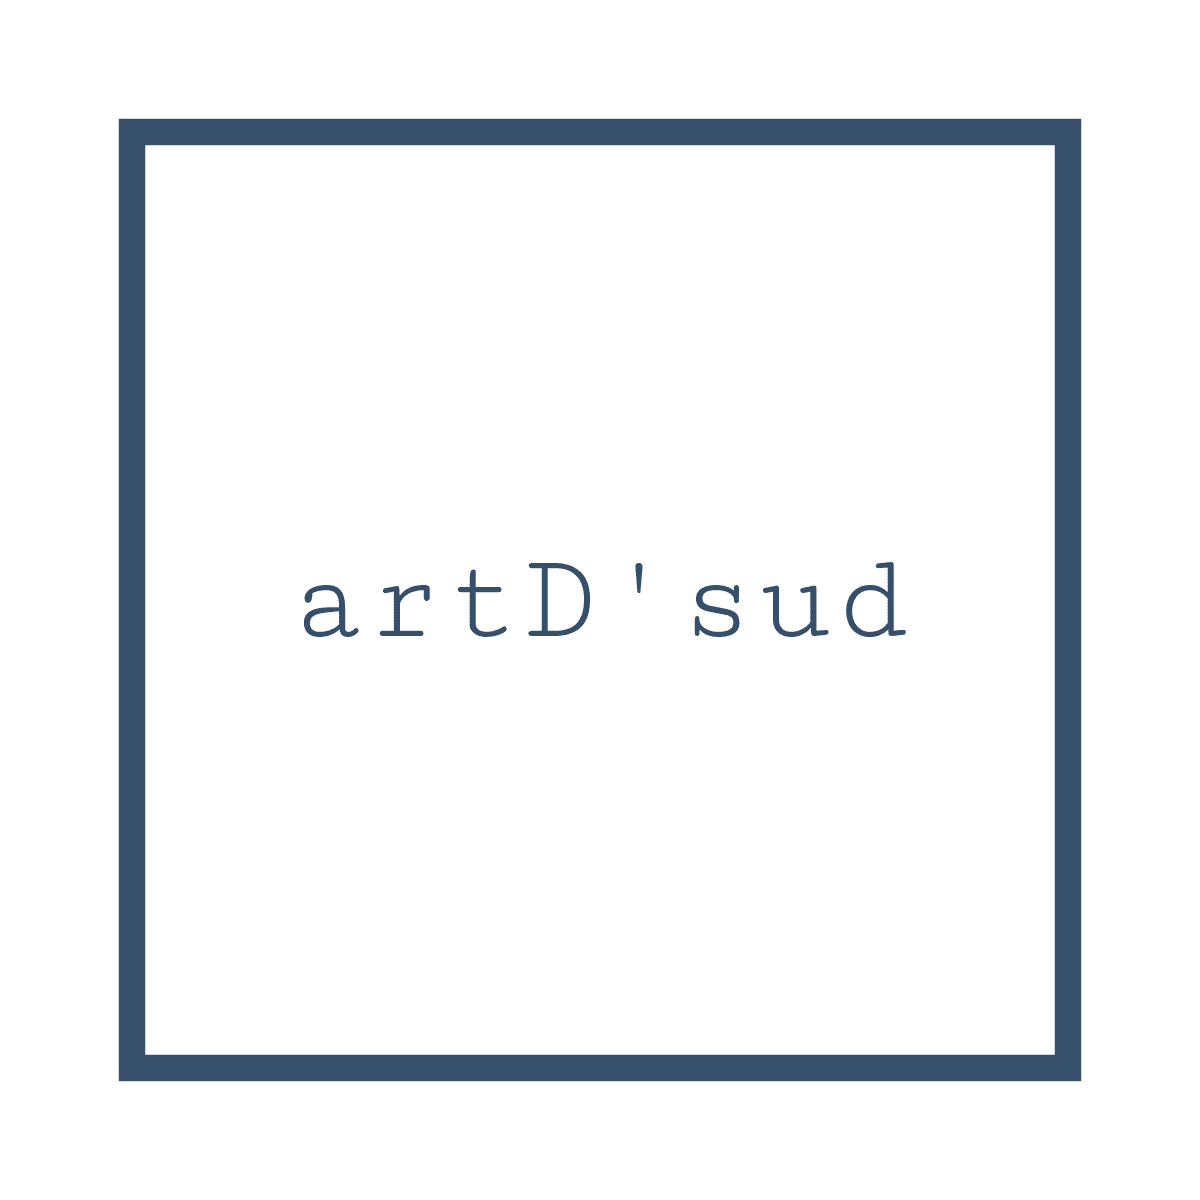 artdsud – Art'D SUD